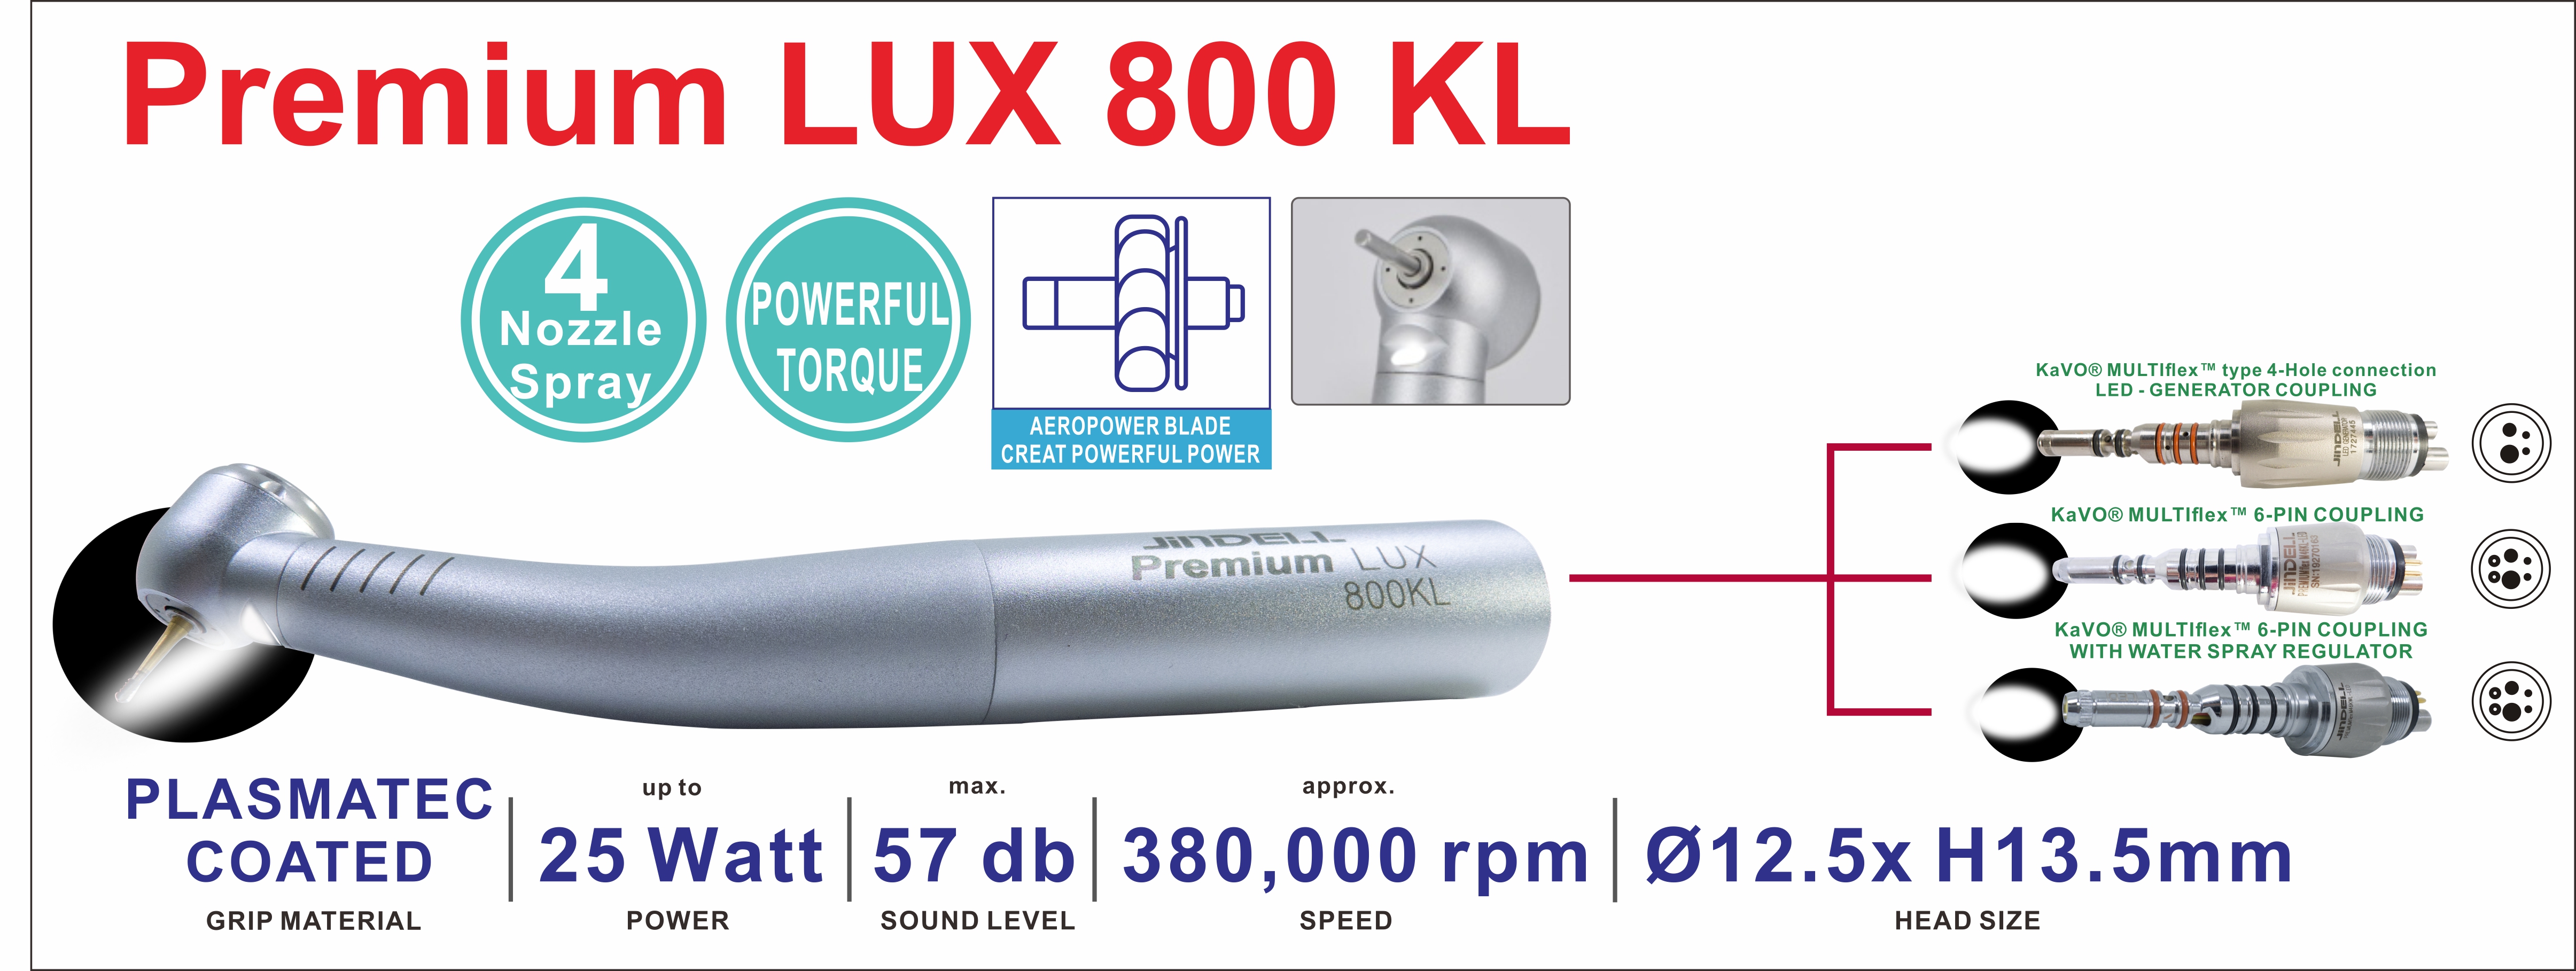 Premium LUX 800KL